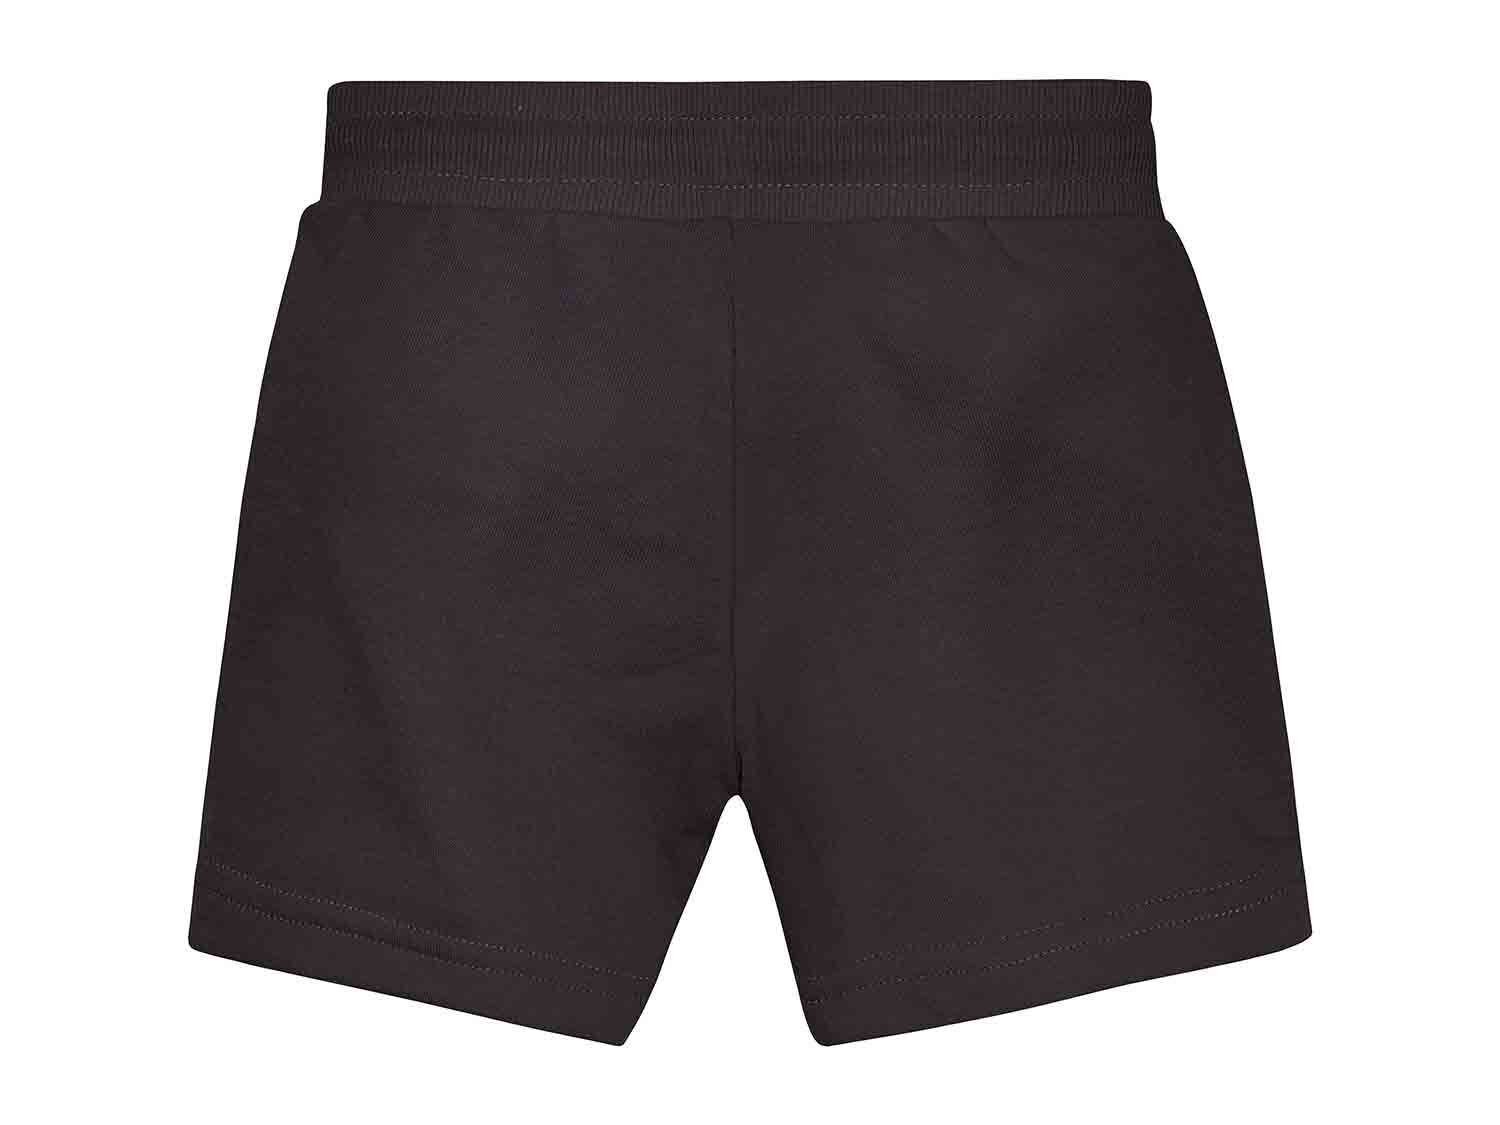 Pantalones cortos de chándal Infantil pack 2